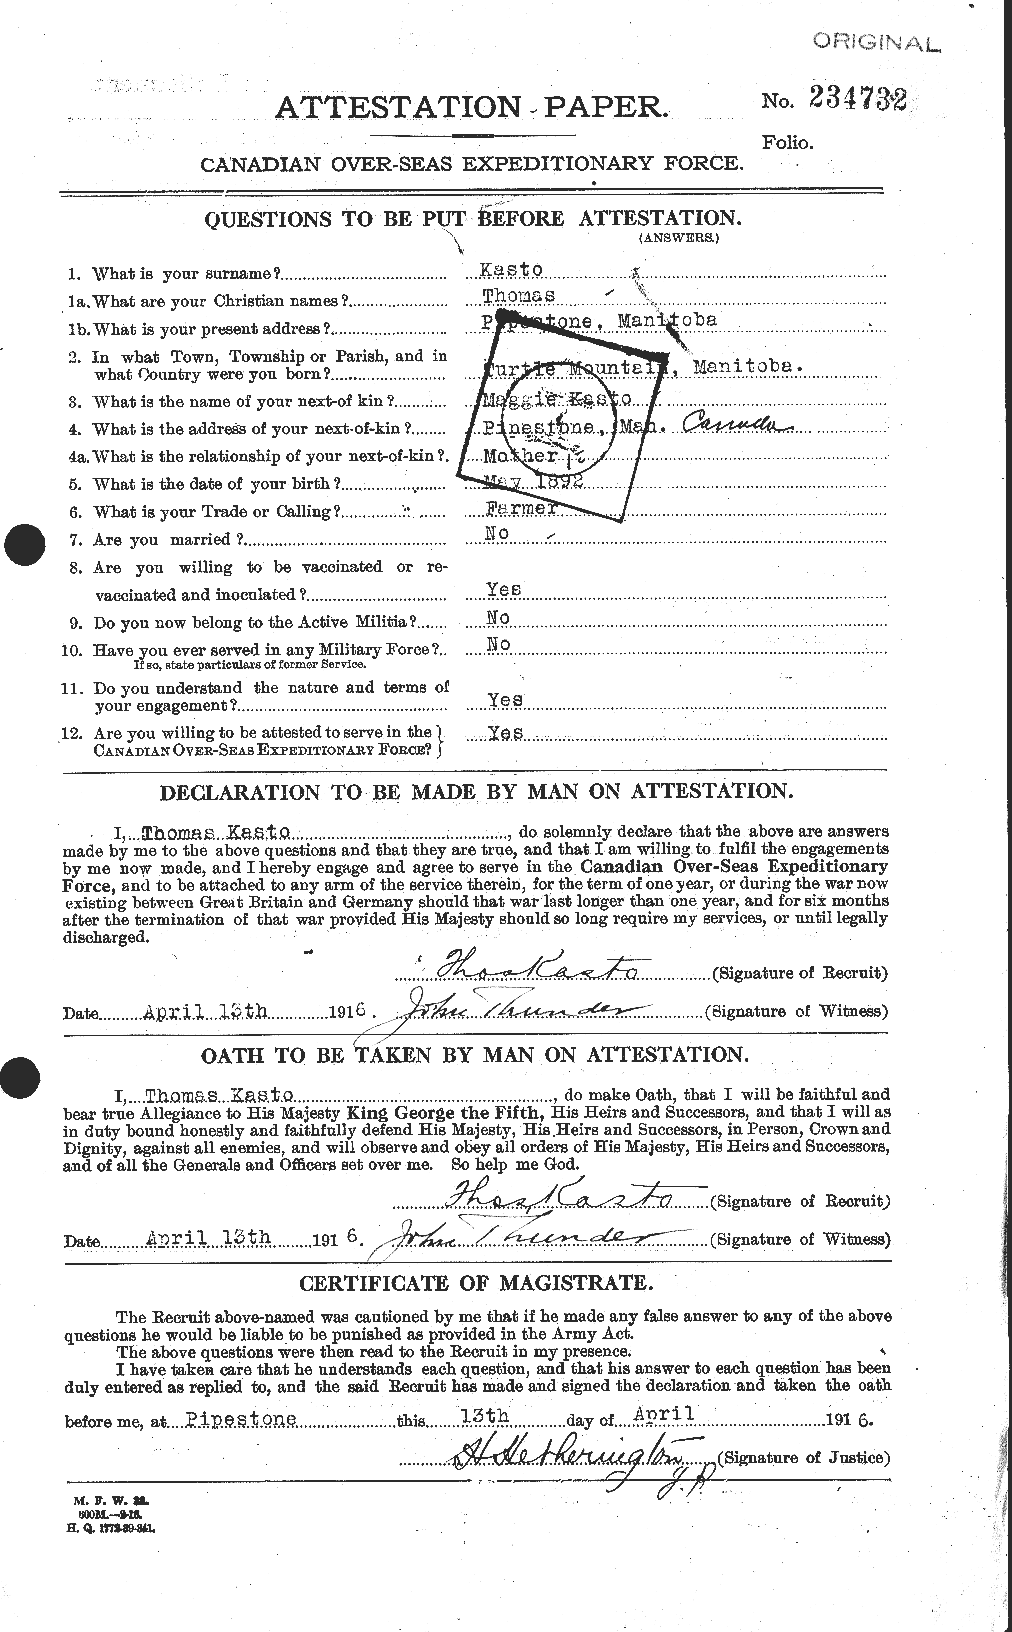 Dossiers du Personnel de la Première Guerre mondiale - CEC 425682a